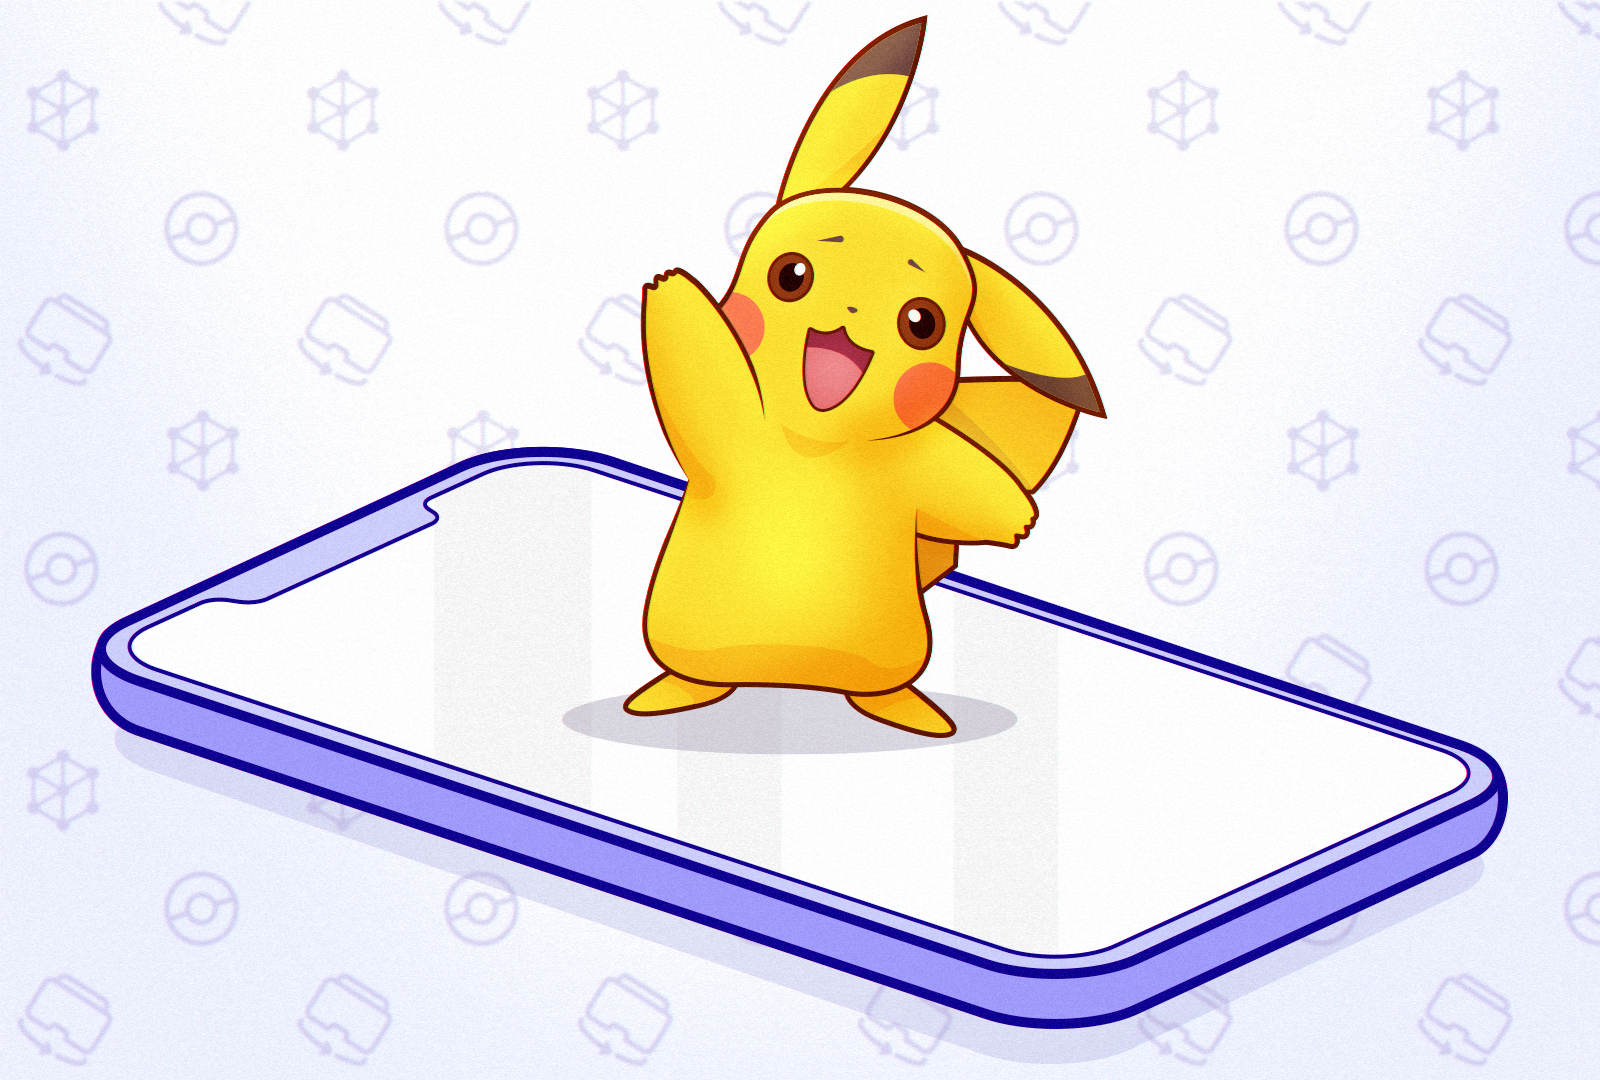 Интересные факты о создании Pokemon Go и почему будущее за AR-технологиями Фото 0